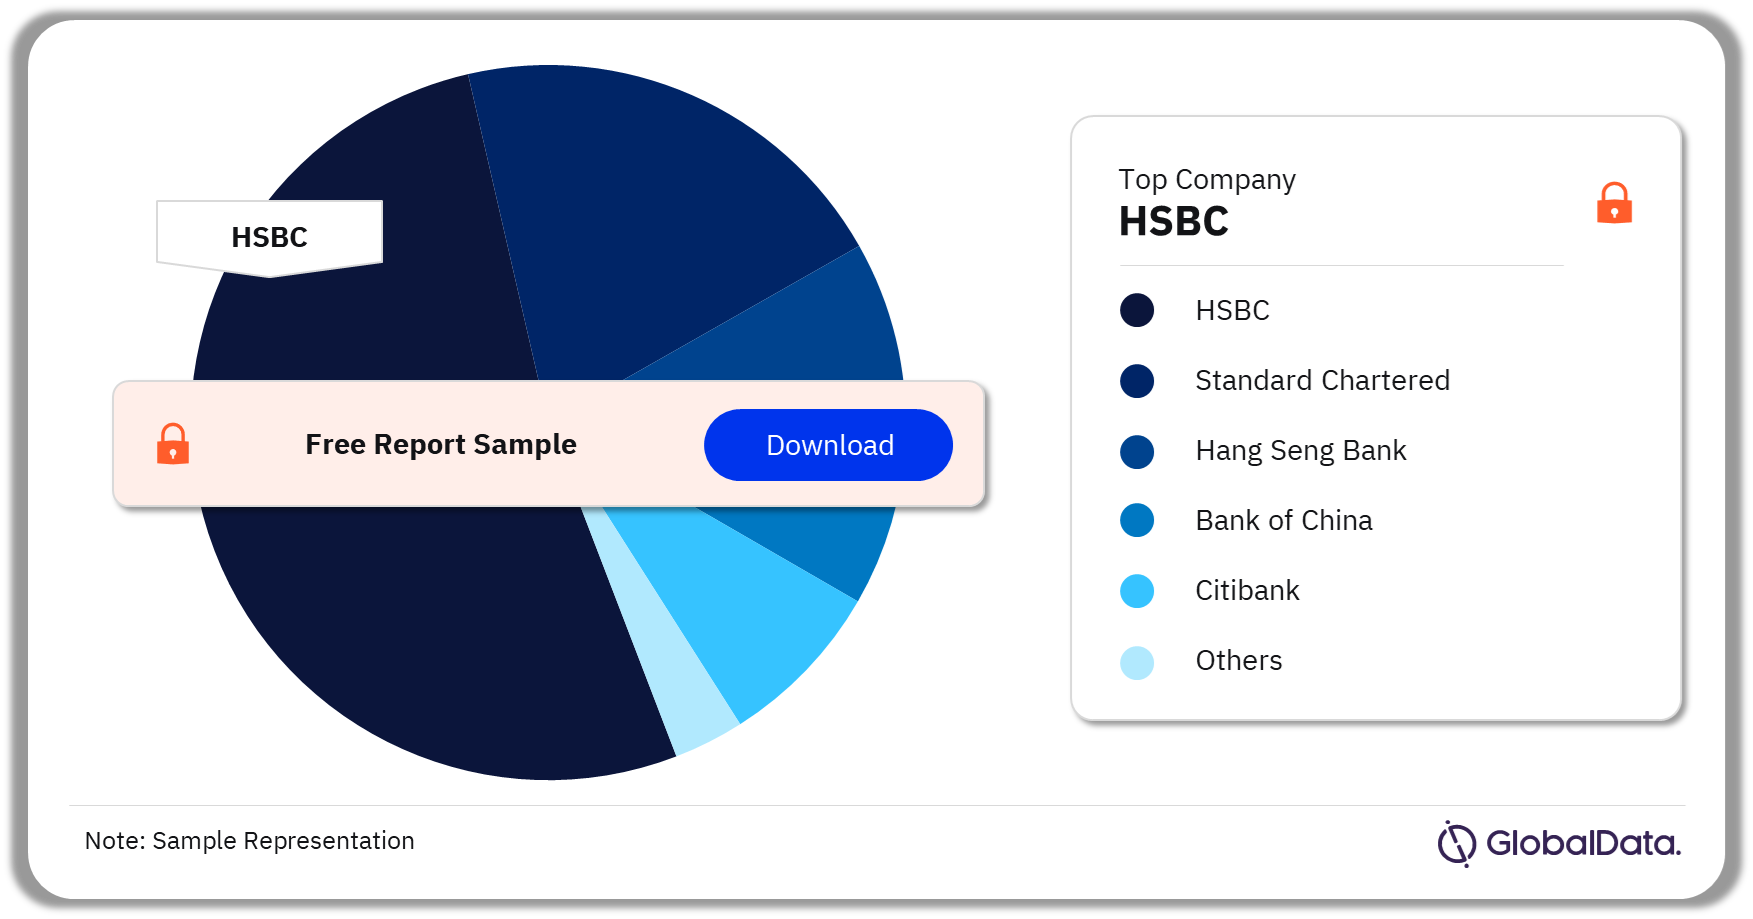 Hong Kong (China SAR) Retail Banking Market Analysis by Companies (based on TDA), 2022 (%)